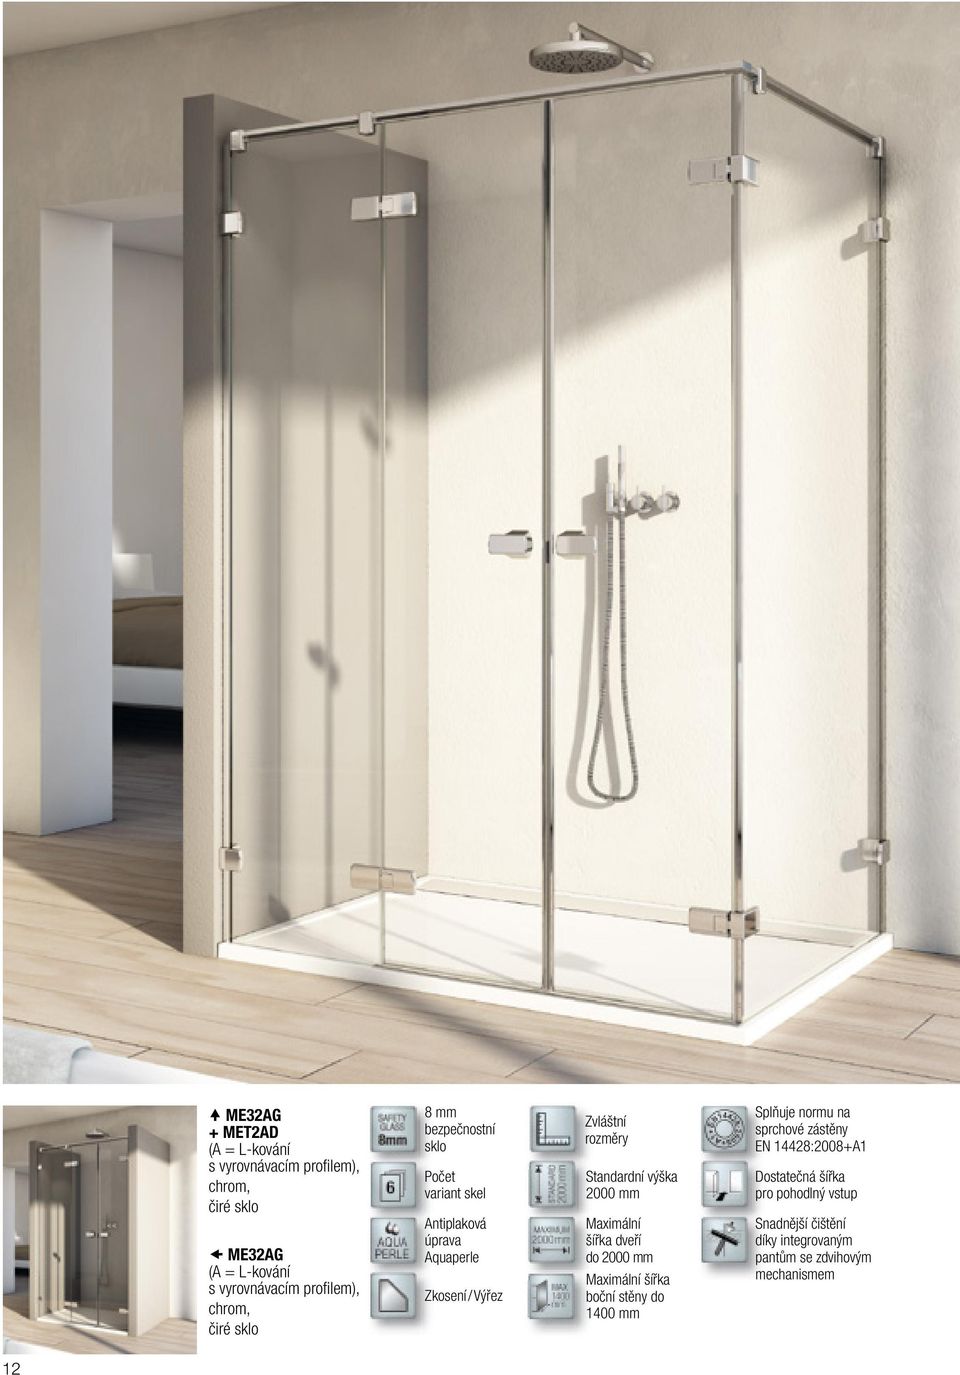 Standardní výška 2000 mm Maximální šířka dveří do 2000 mm Maximální šířka boční stěny do 1400 mm Splňuje normu na sprchové